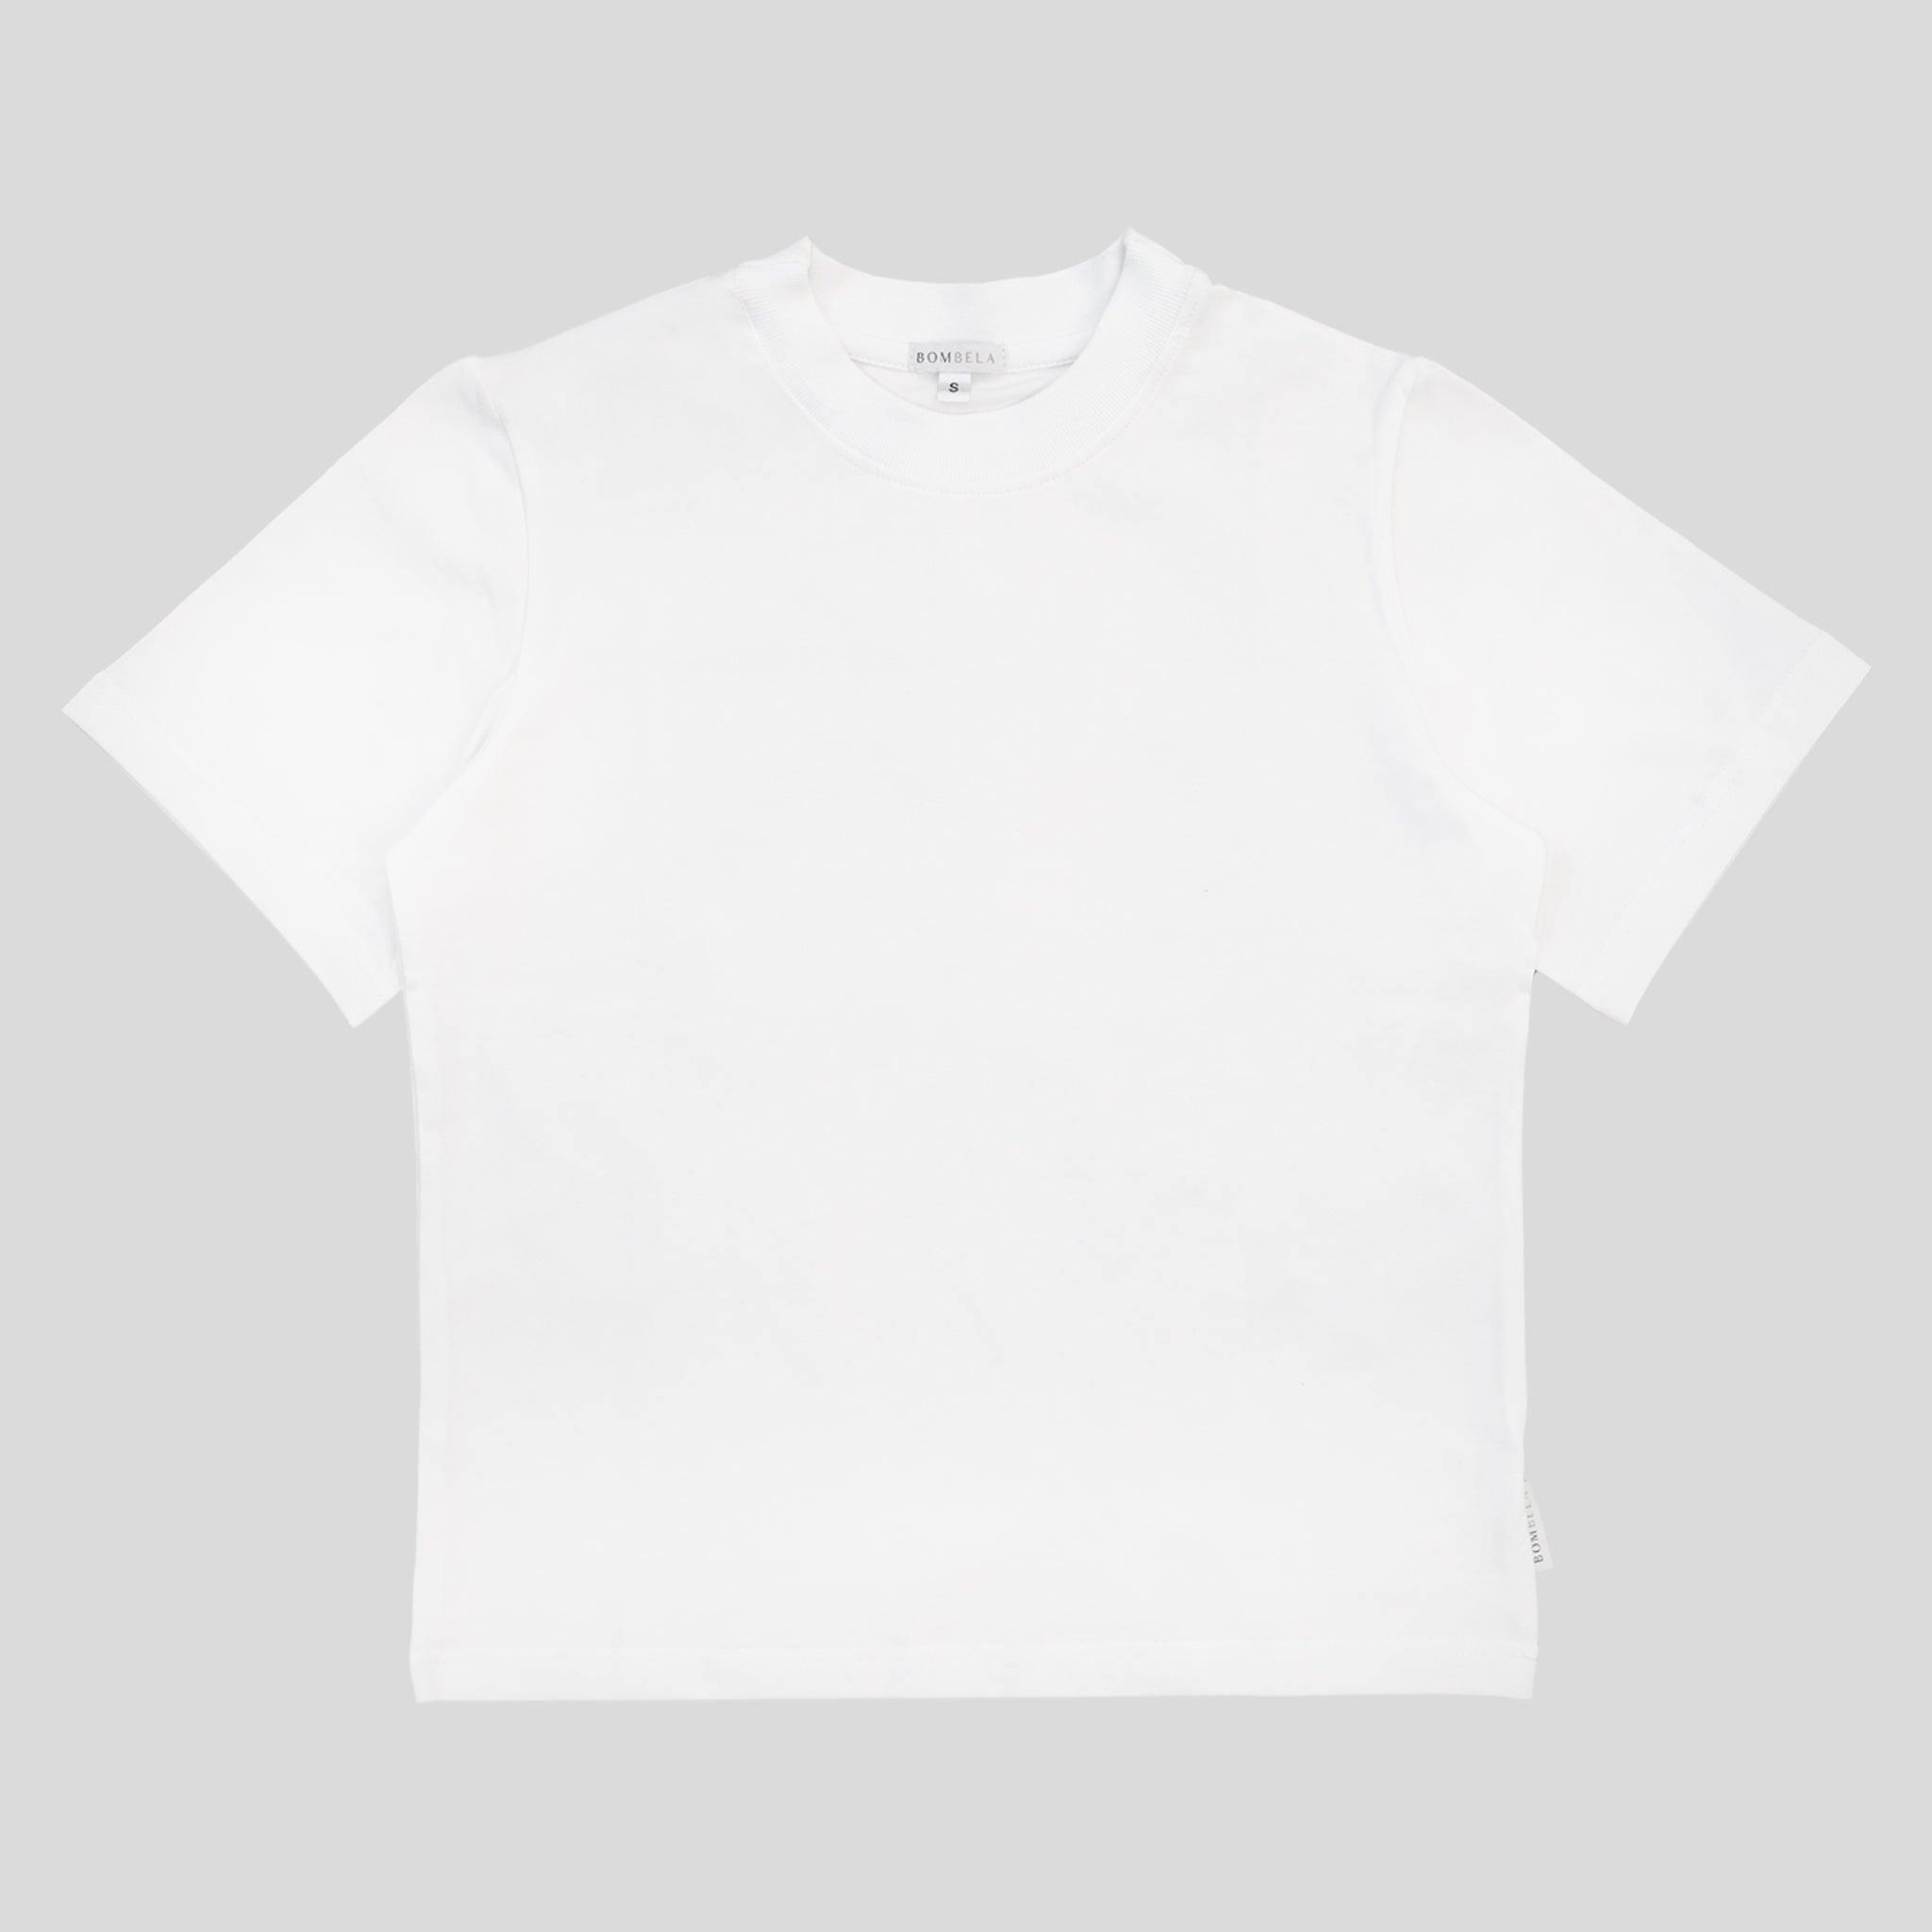 T-shirt damski CLASSIC biały (ściągacz)